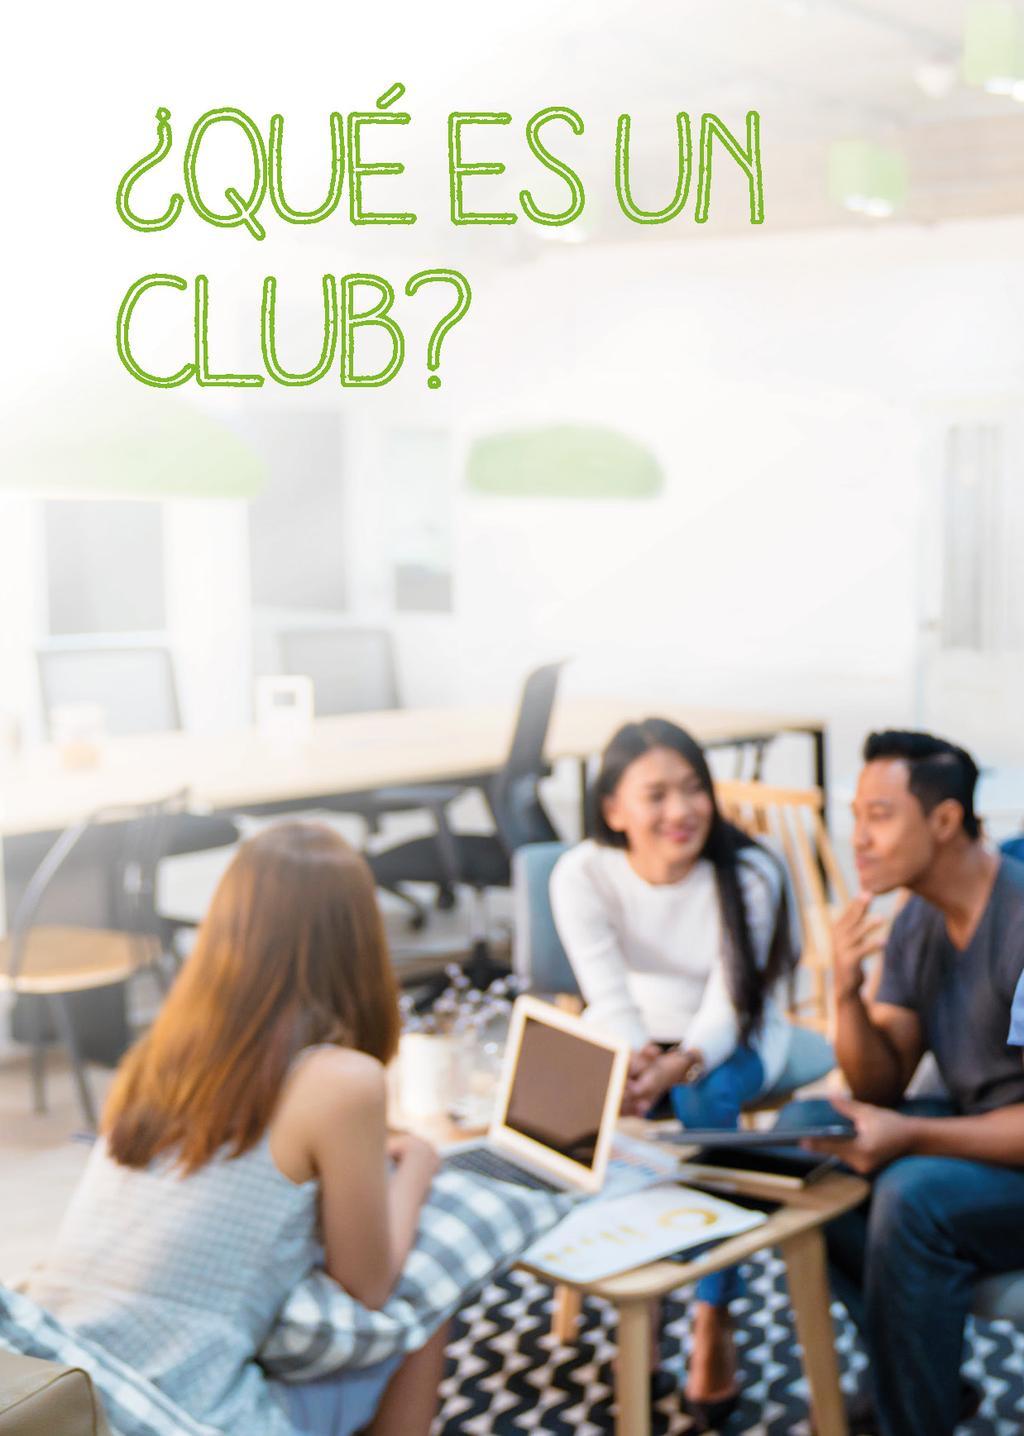 Un Club es un espacio creado y atendido por Distribuidores Independientes donde diariamente se reúne gente en un ambiente social, amigable y divertido a compartir los beneficios de una buena